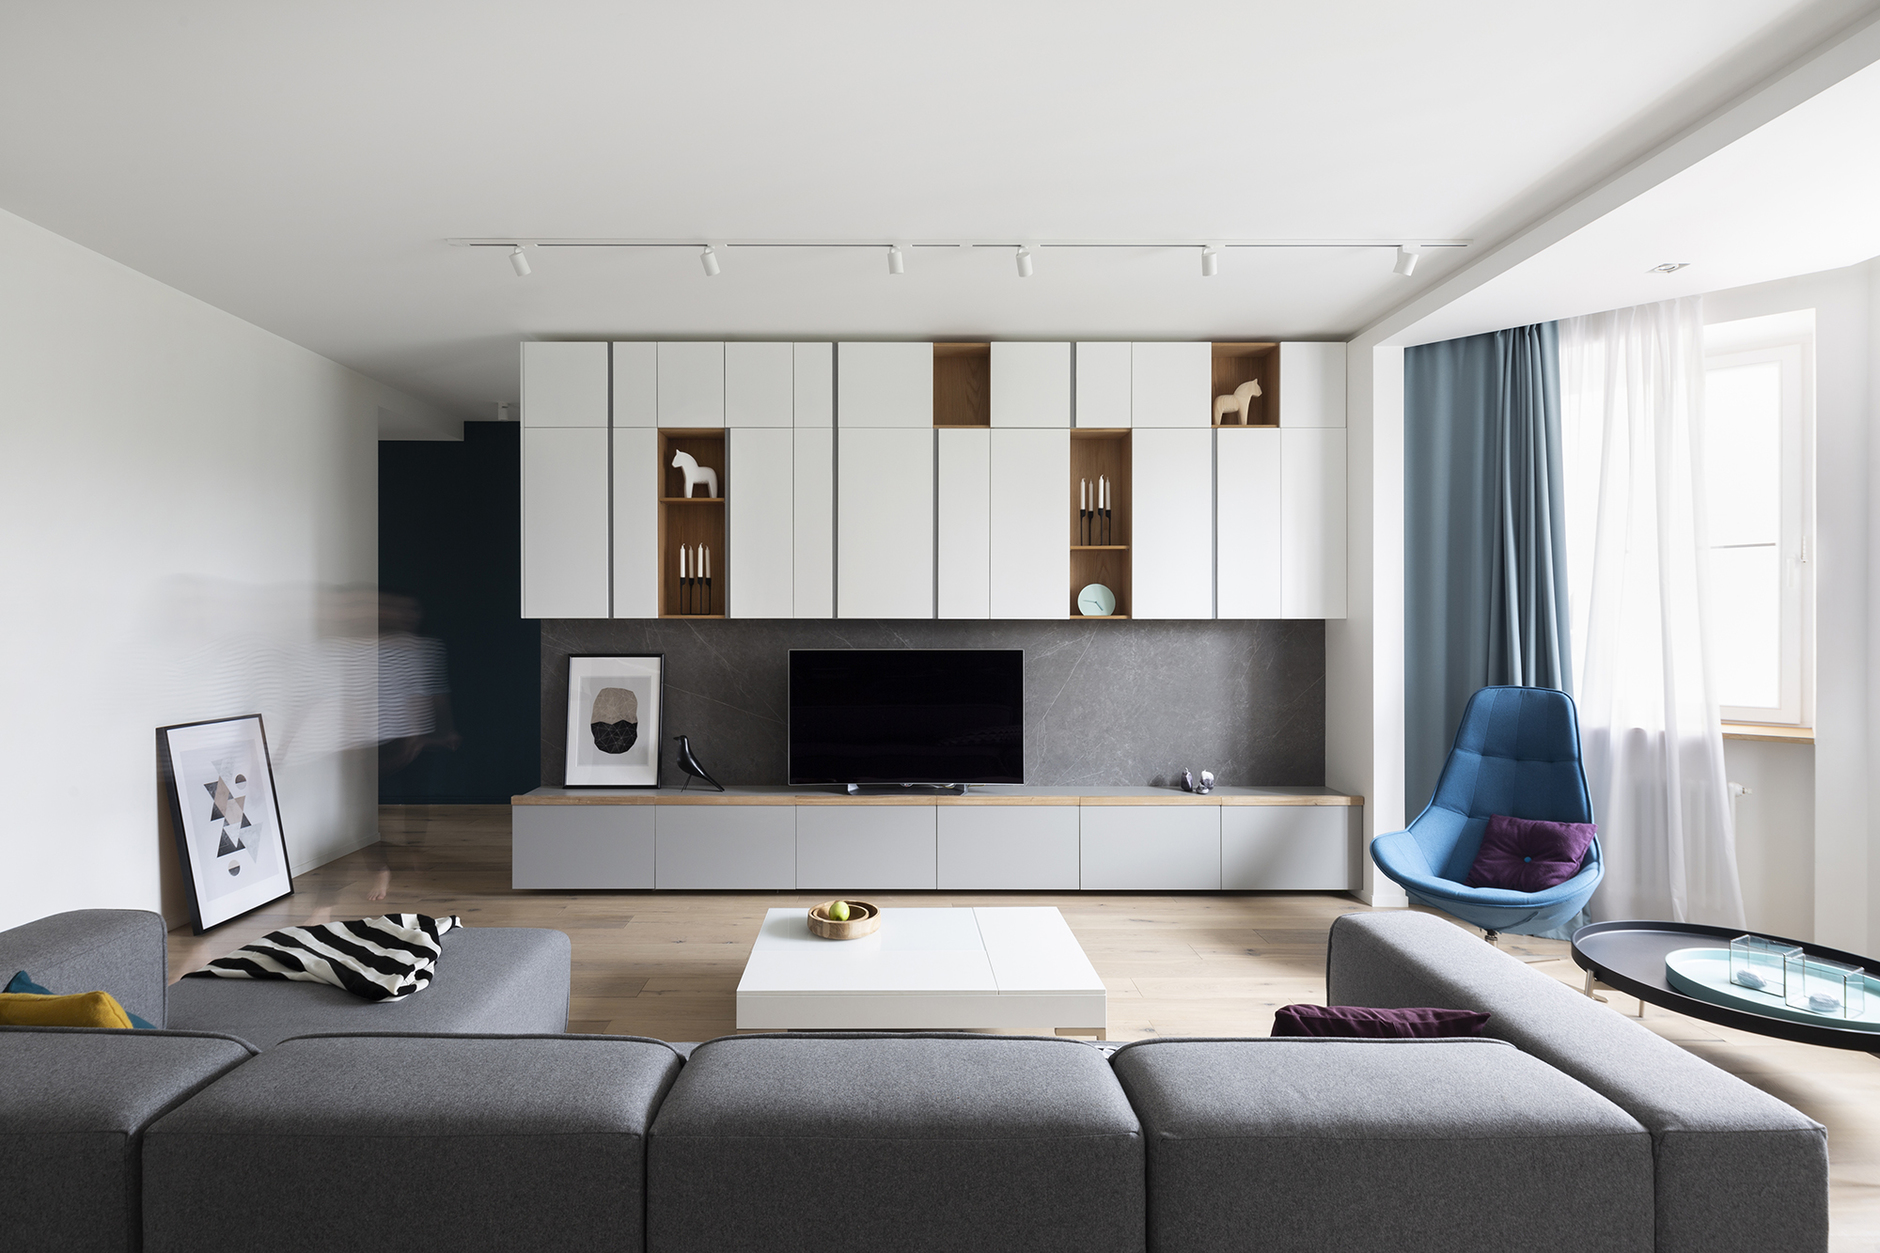 Dự án cải tạo căn hộ do Zeworkroom Studio thực hiện theo phong cách Scandinavian. Từ ghế sofa module đến bàn nước đều có thiết kế tối giản. Đặc biệt, hệ thống tủ kệ lưu trữ đối diện tận dụng tối đa bề mặt tường để làm không gian lưu trữ.